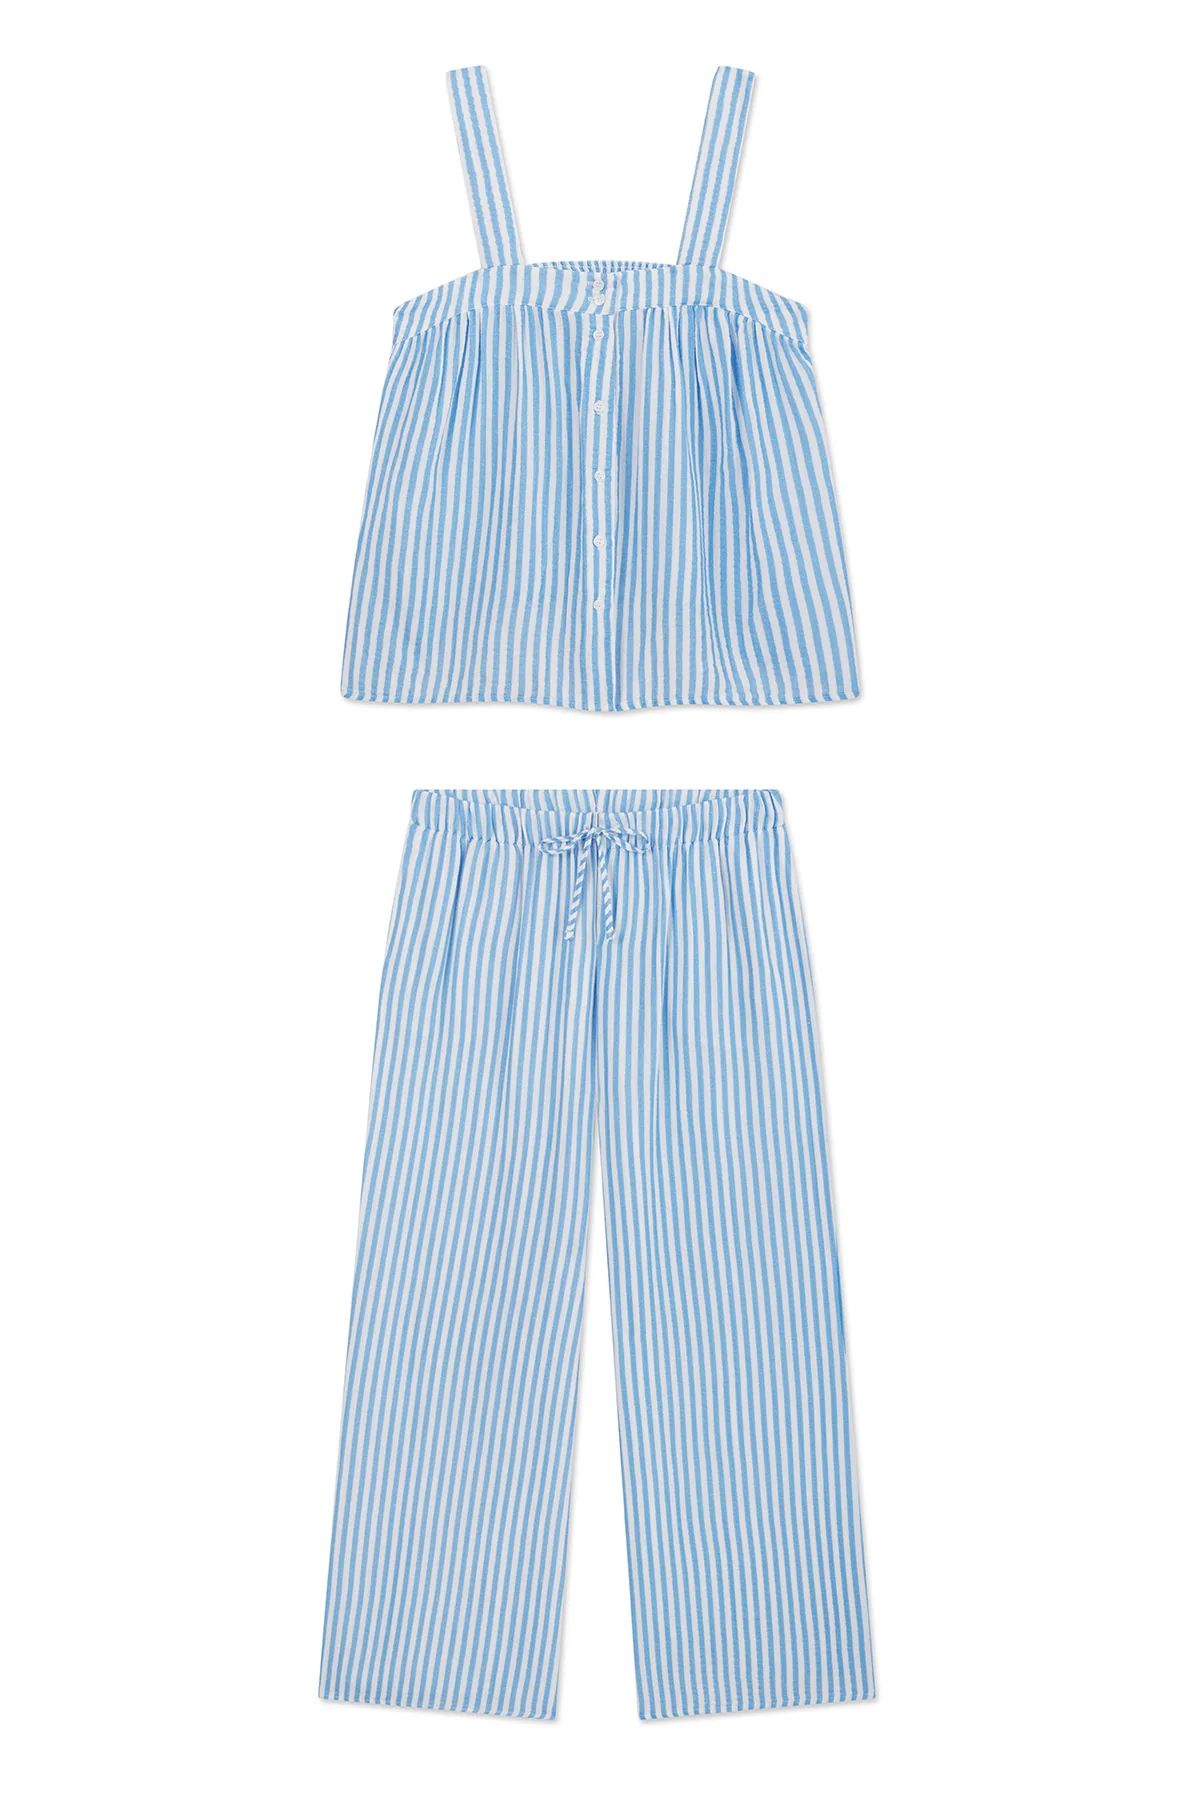 Hamptons Pants Set in Sail Blue Awning Stripe | Lake Pajamas